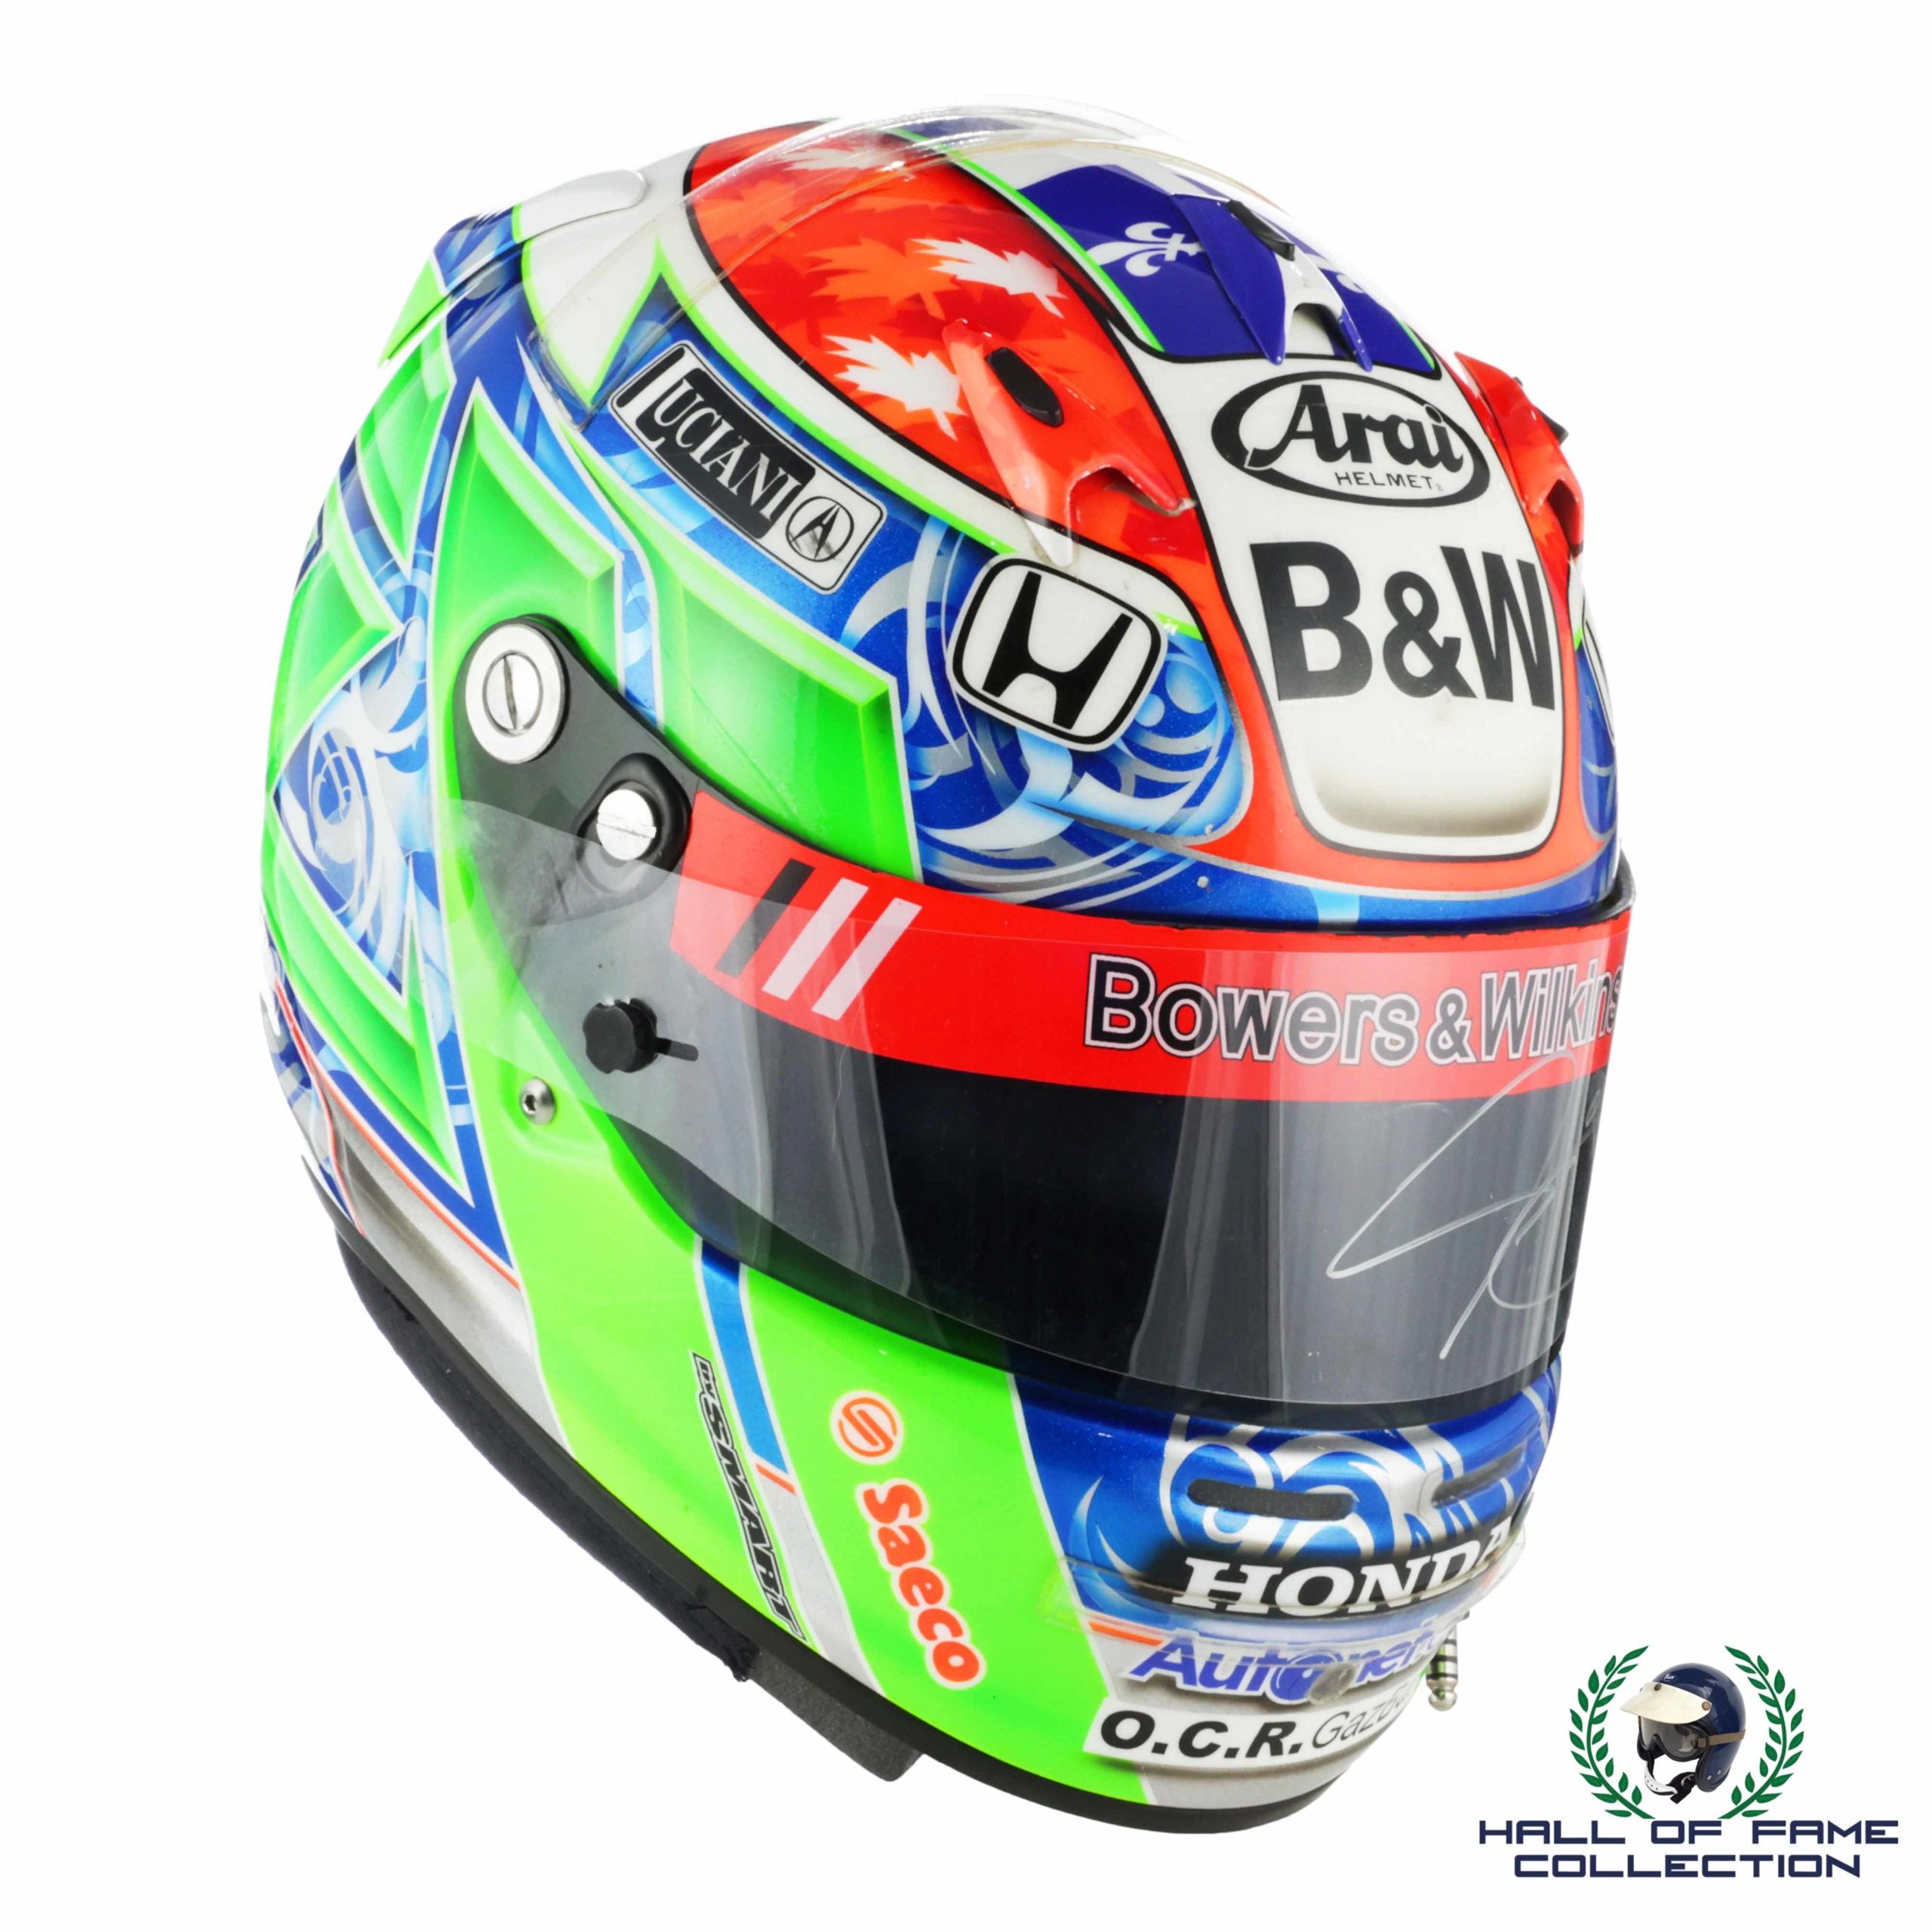 2010 Alex Tagliani Signed Race Used Toronto IndyCar Helmet